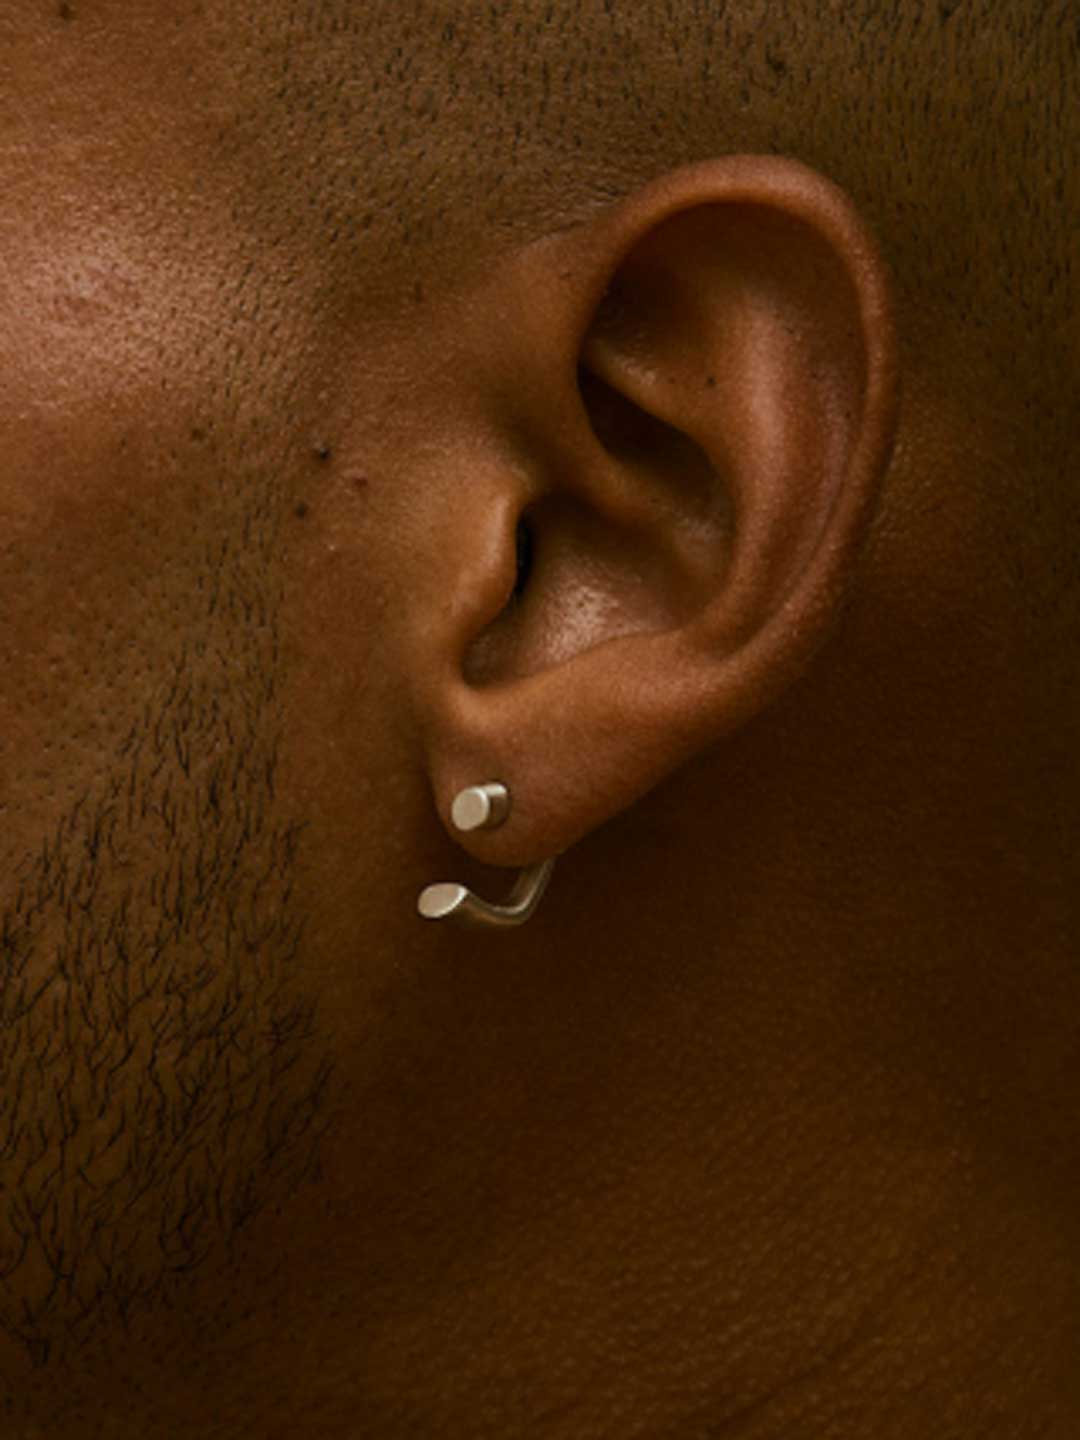 Open Hoop Pierced Earring - Gold